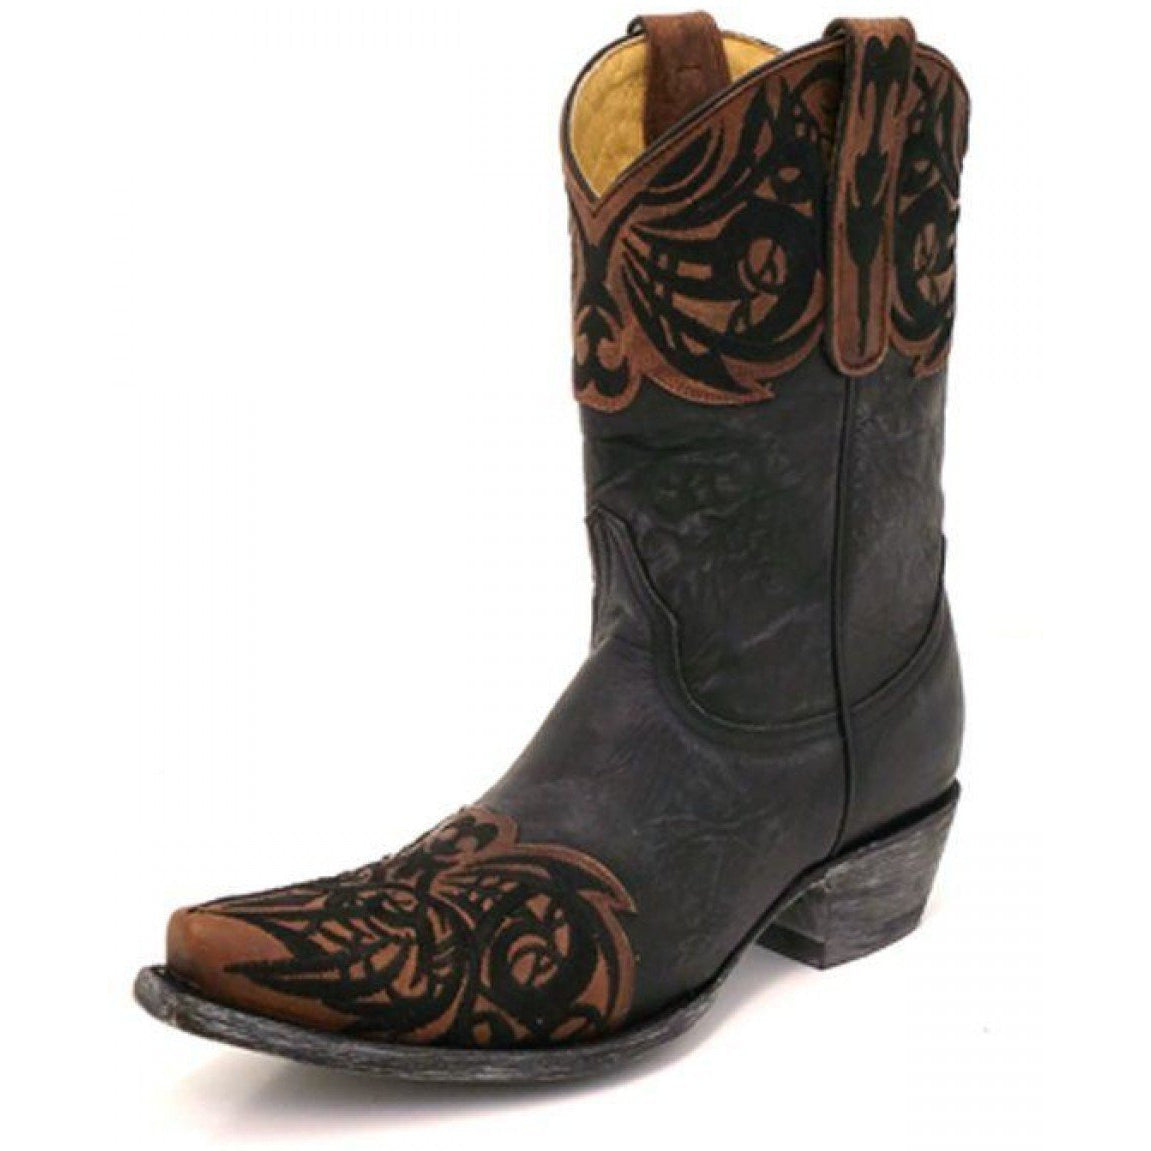 Old Gringo Yippee Ki Yay Paka Black and Oryx Boots - West 20 Saddle Co.